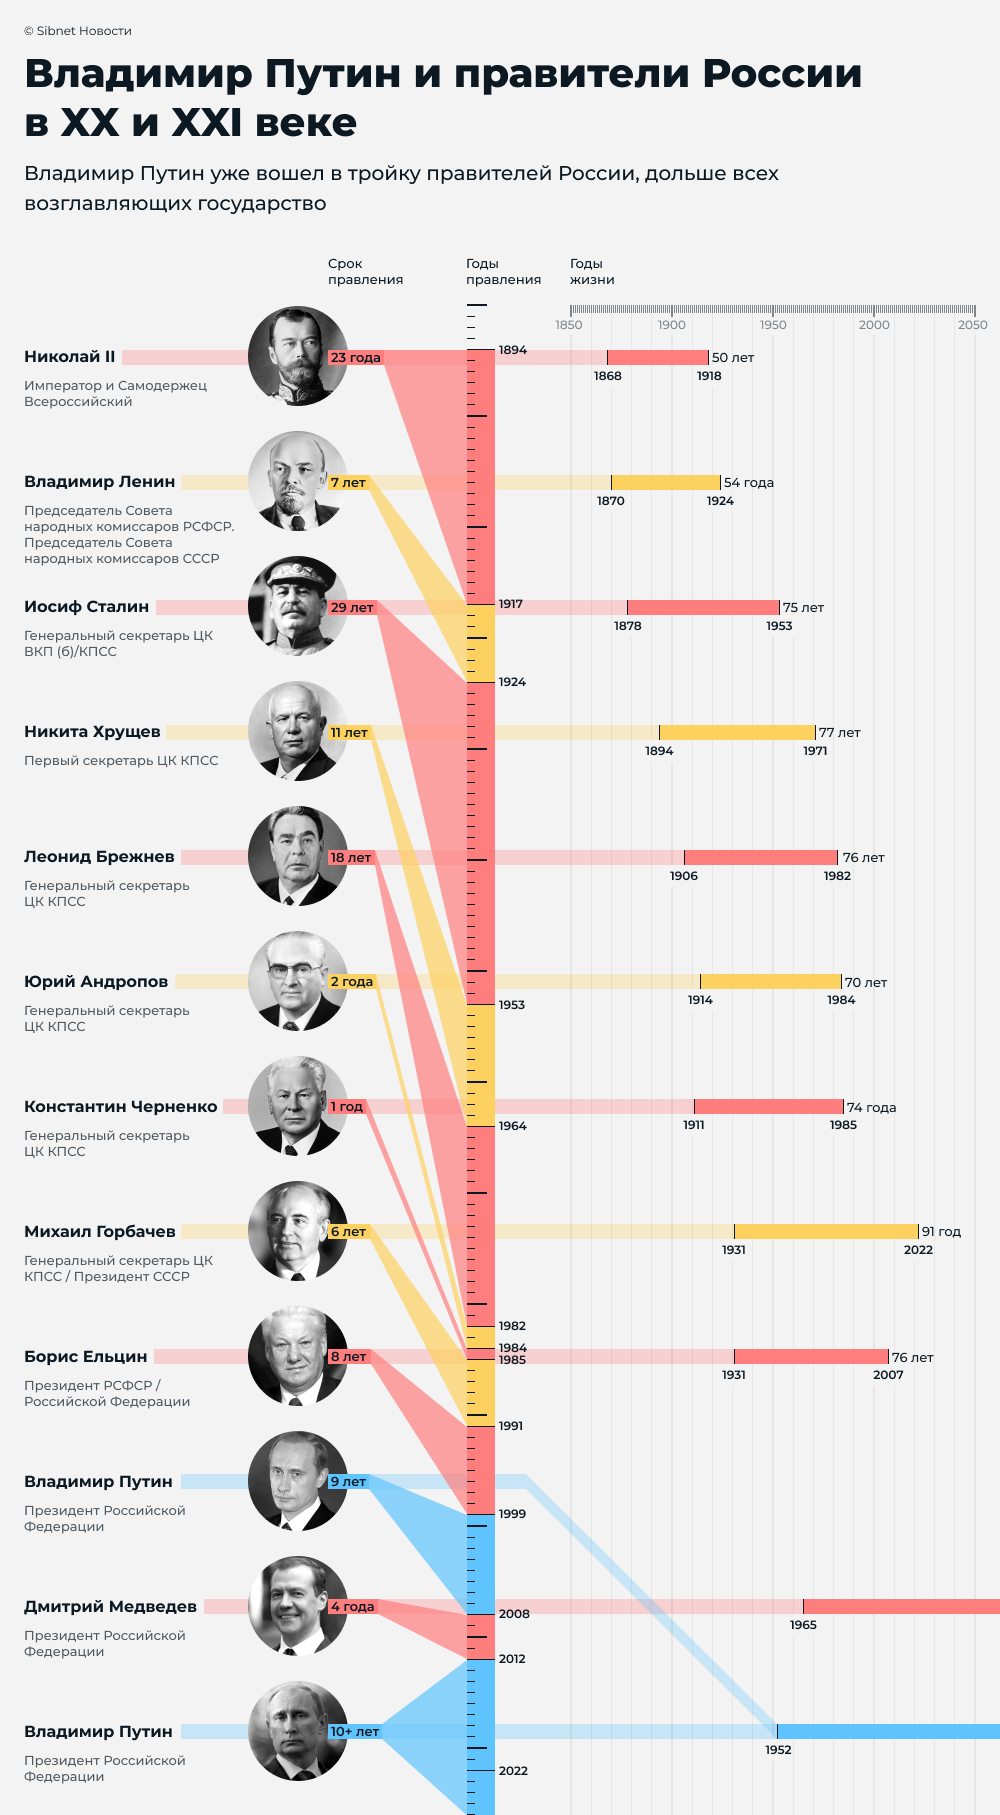 Кандидаты на должность президента рф 2024 года. Кто будет президентом в 2024 году. Кто будет президентом после Путина в 2024 году.